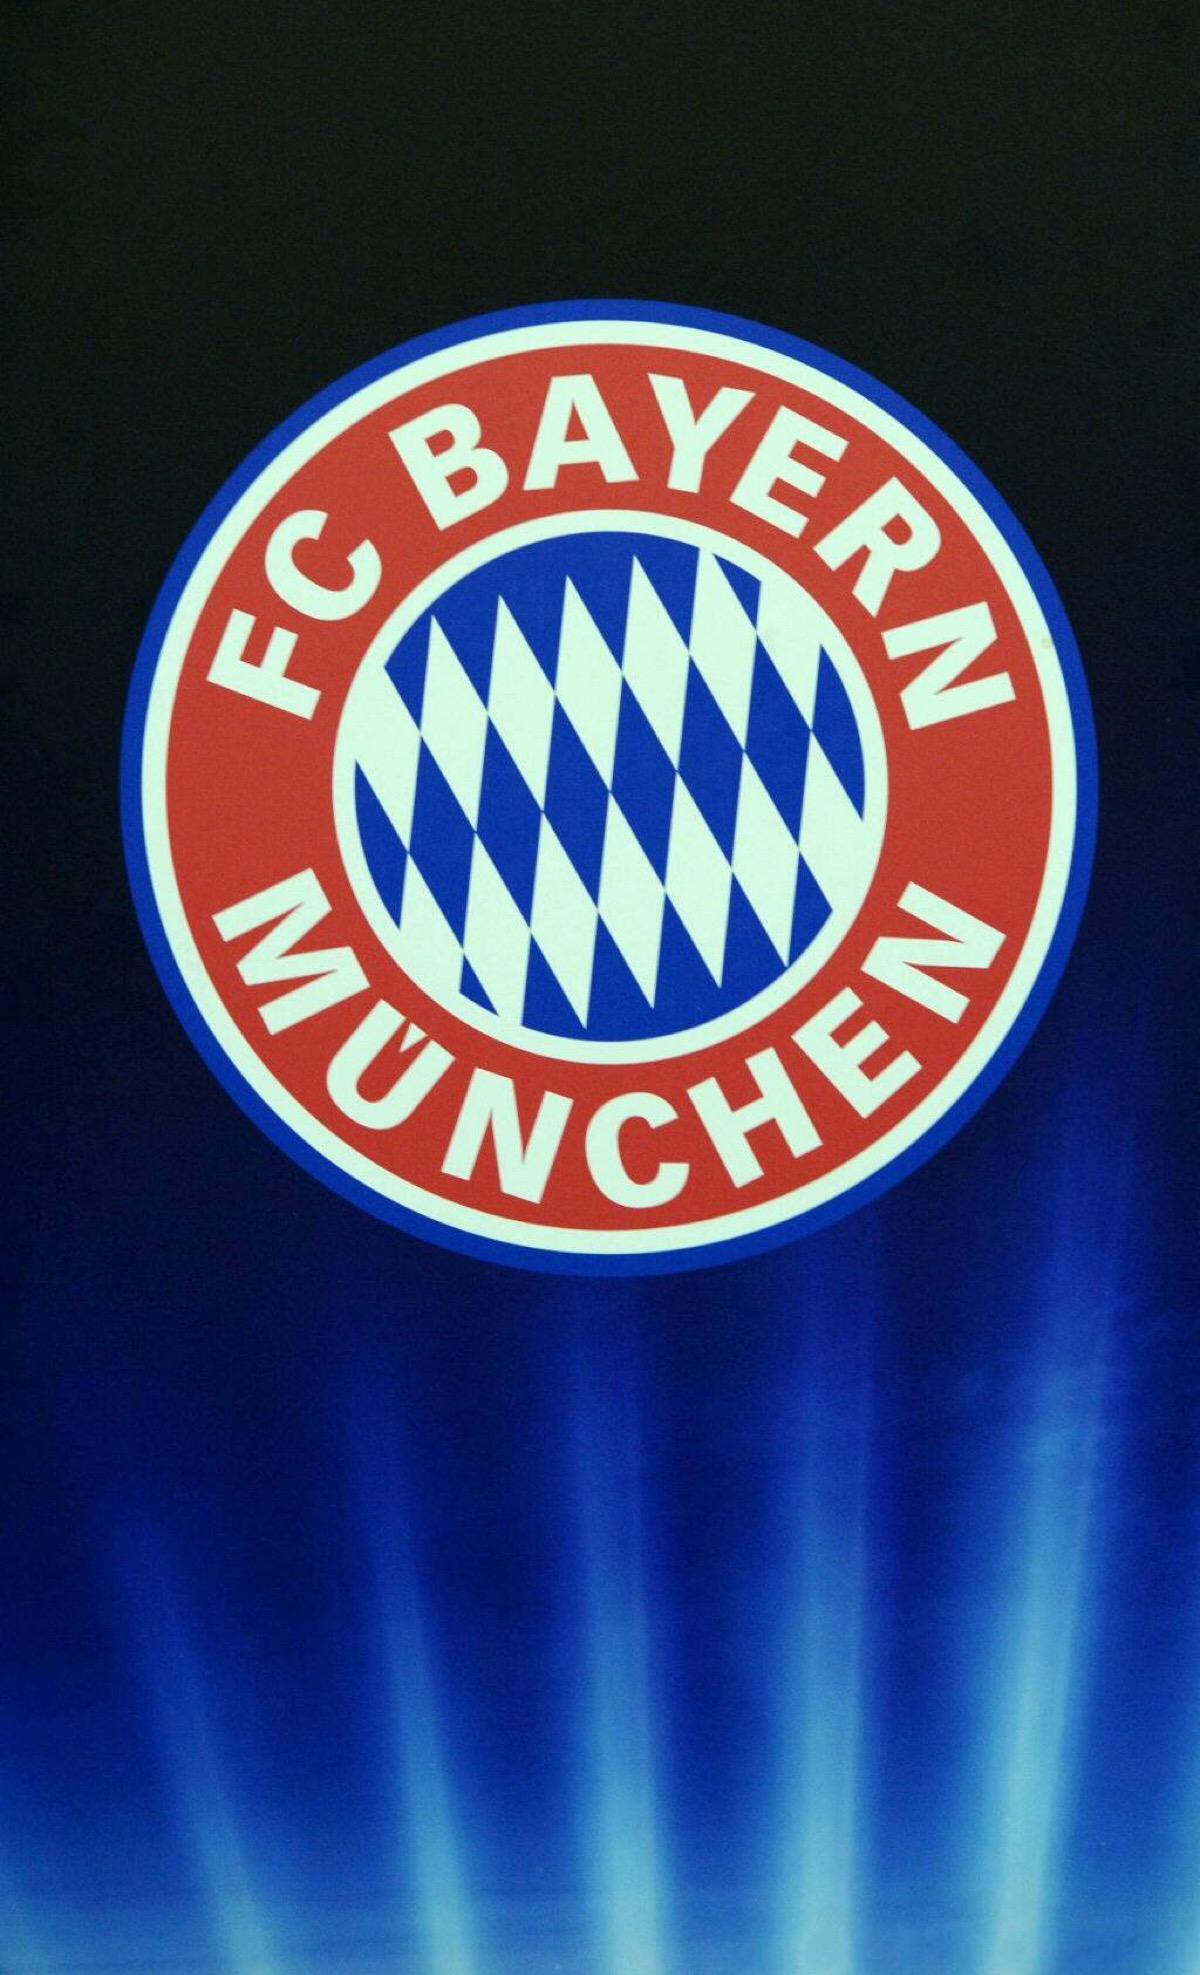 拜仁慕尼黑足球俱乐部注册协会,简称拜仁慕尼黑或拜仁,是一家设于